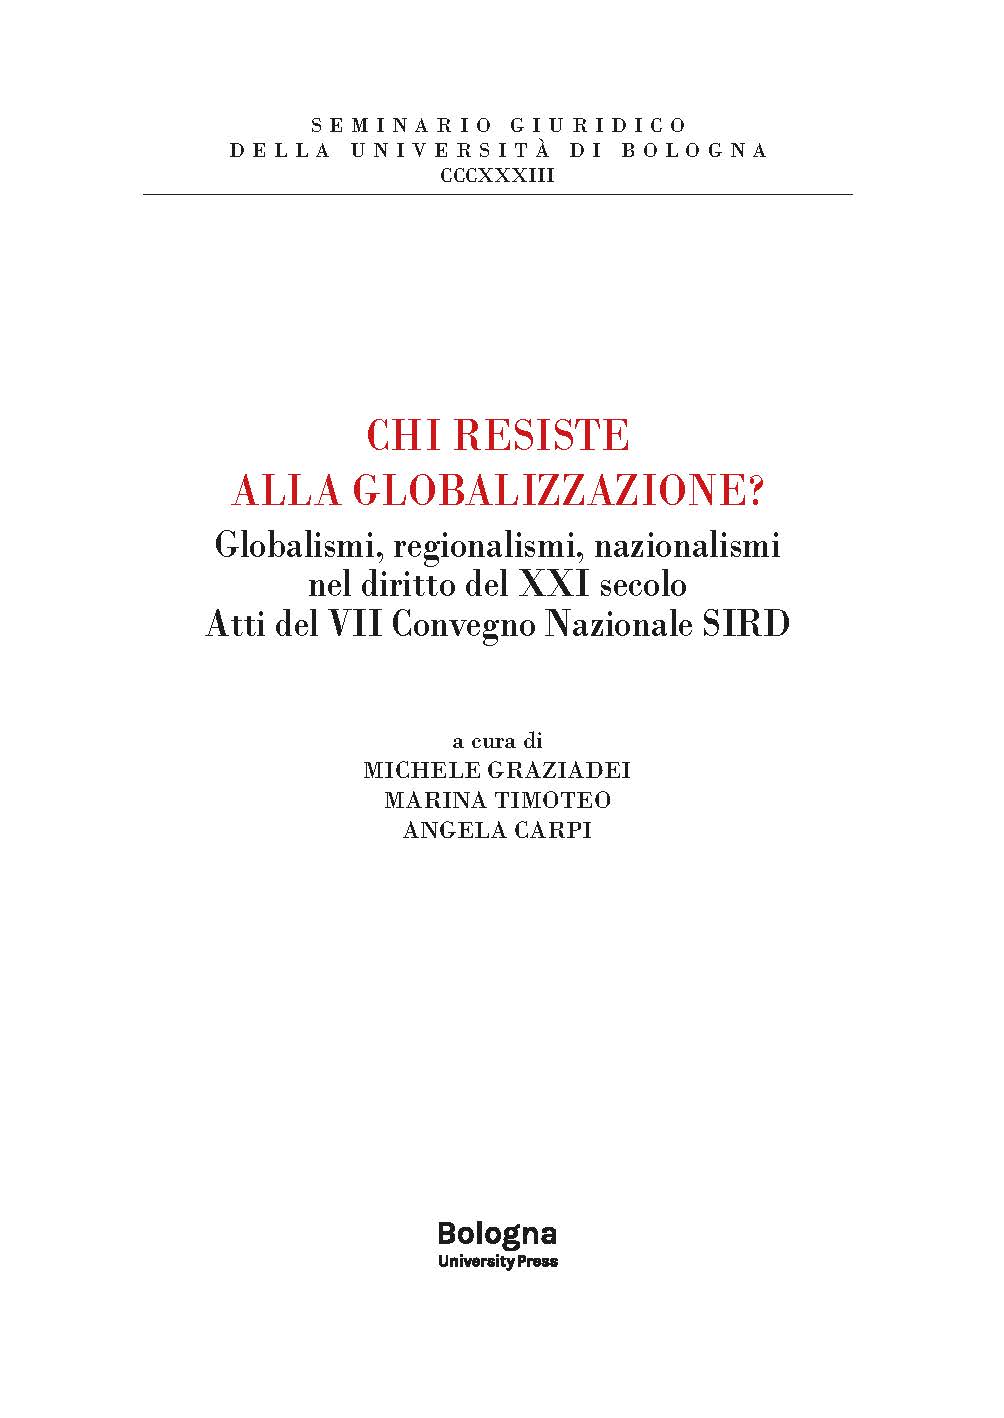 Chi resiste alla globalizzazione? - Bologna University Press